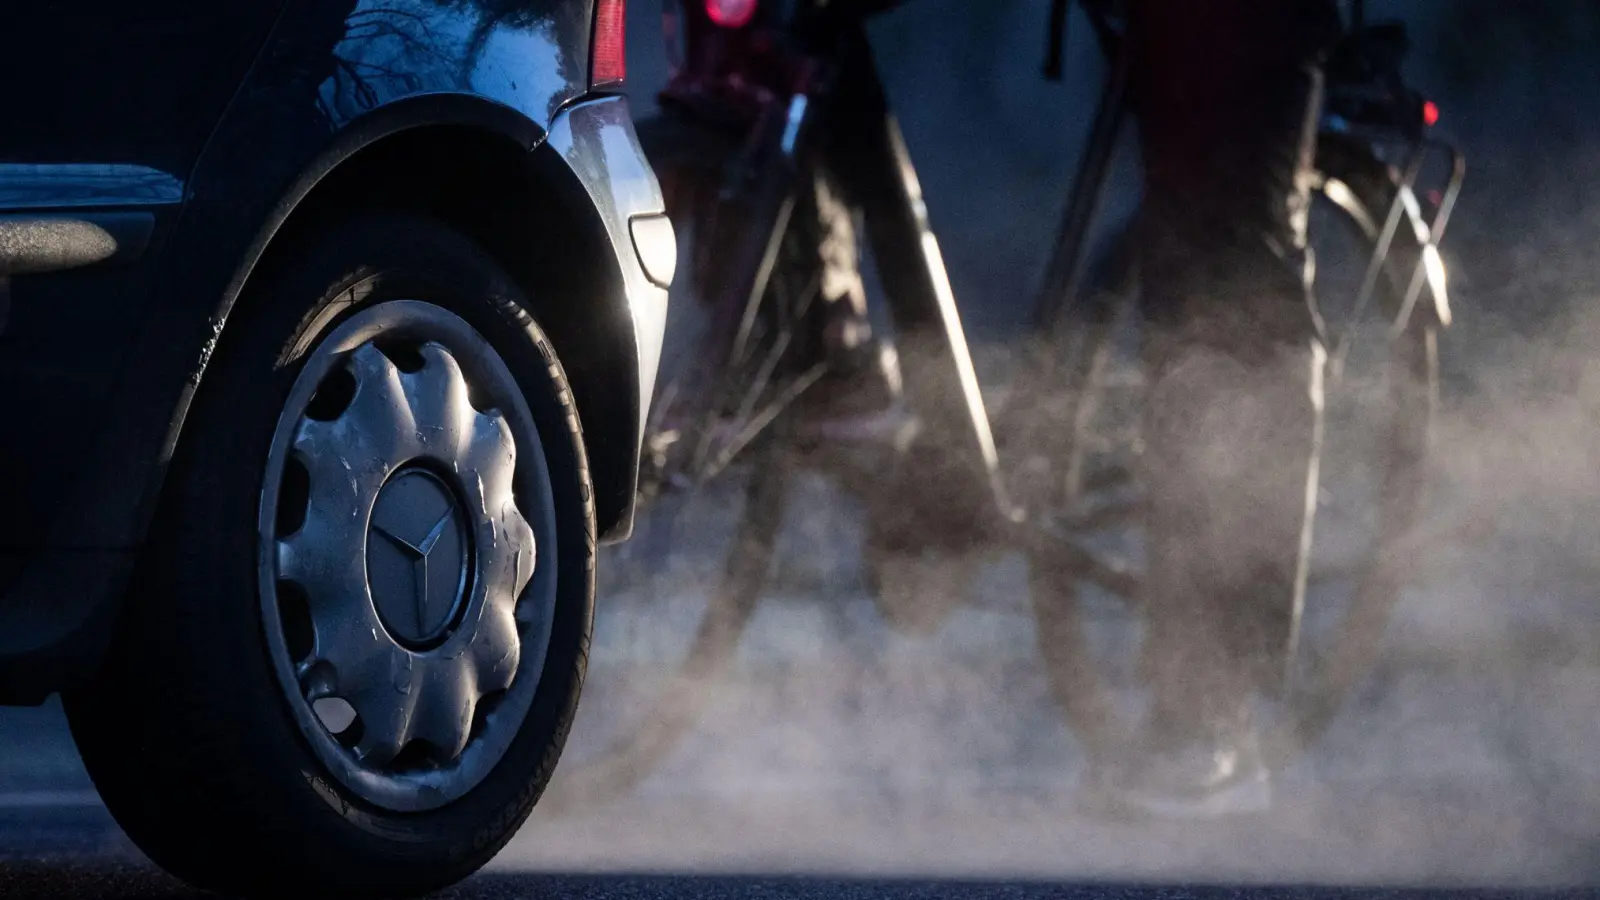 Allein in Deutschland muss Merceds-Benz zehntausende Diesel-Autos wegen des Vorwurfs einer illegalen Abgastechnik zurückrufen. (Foto: Marijan Murat/dpa)